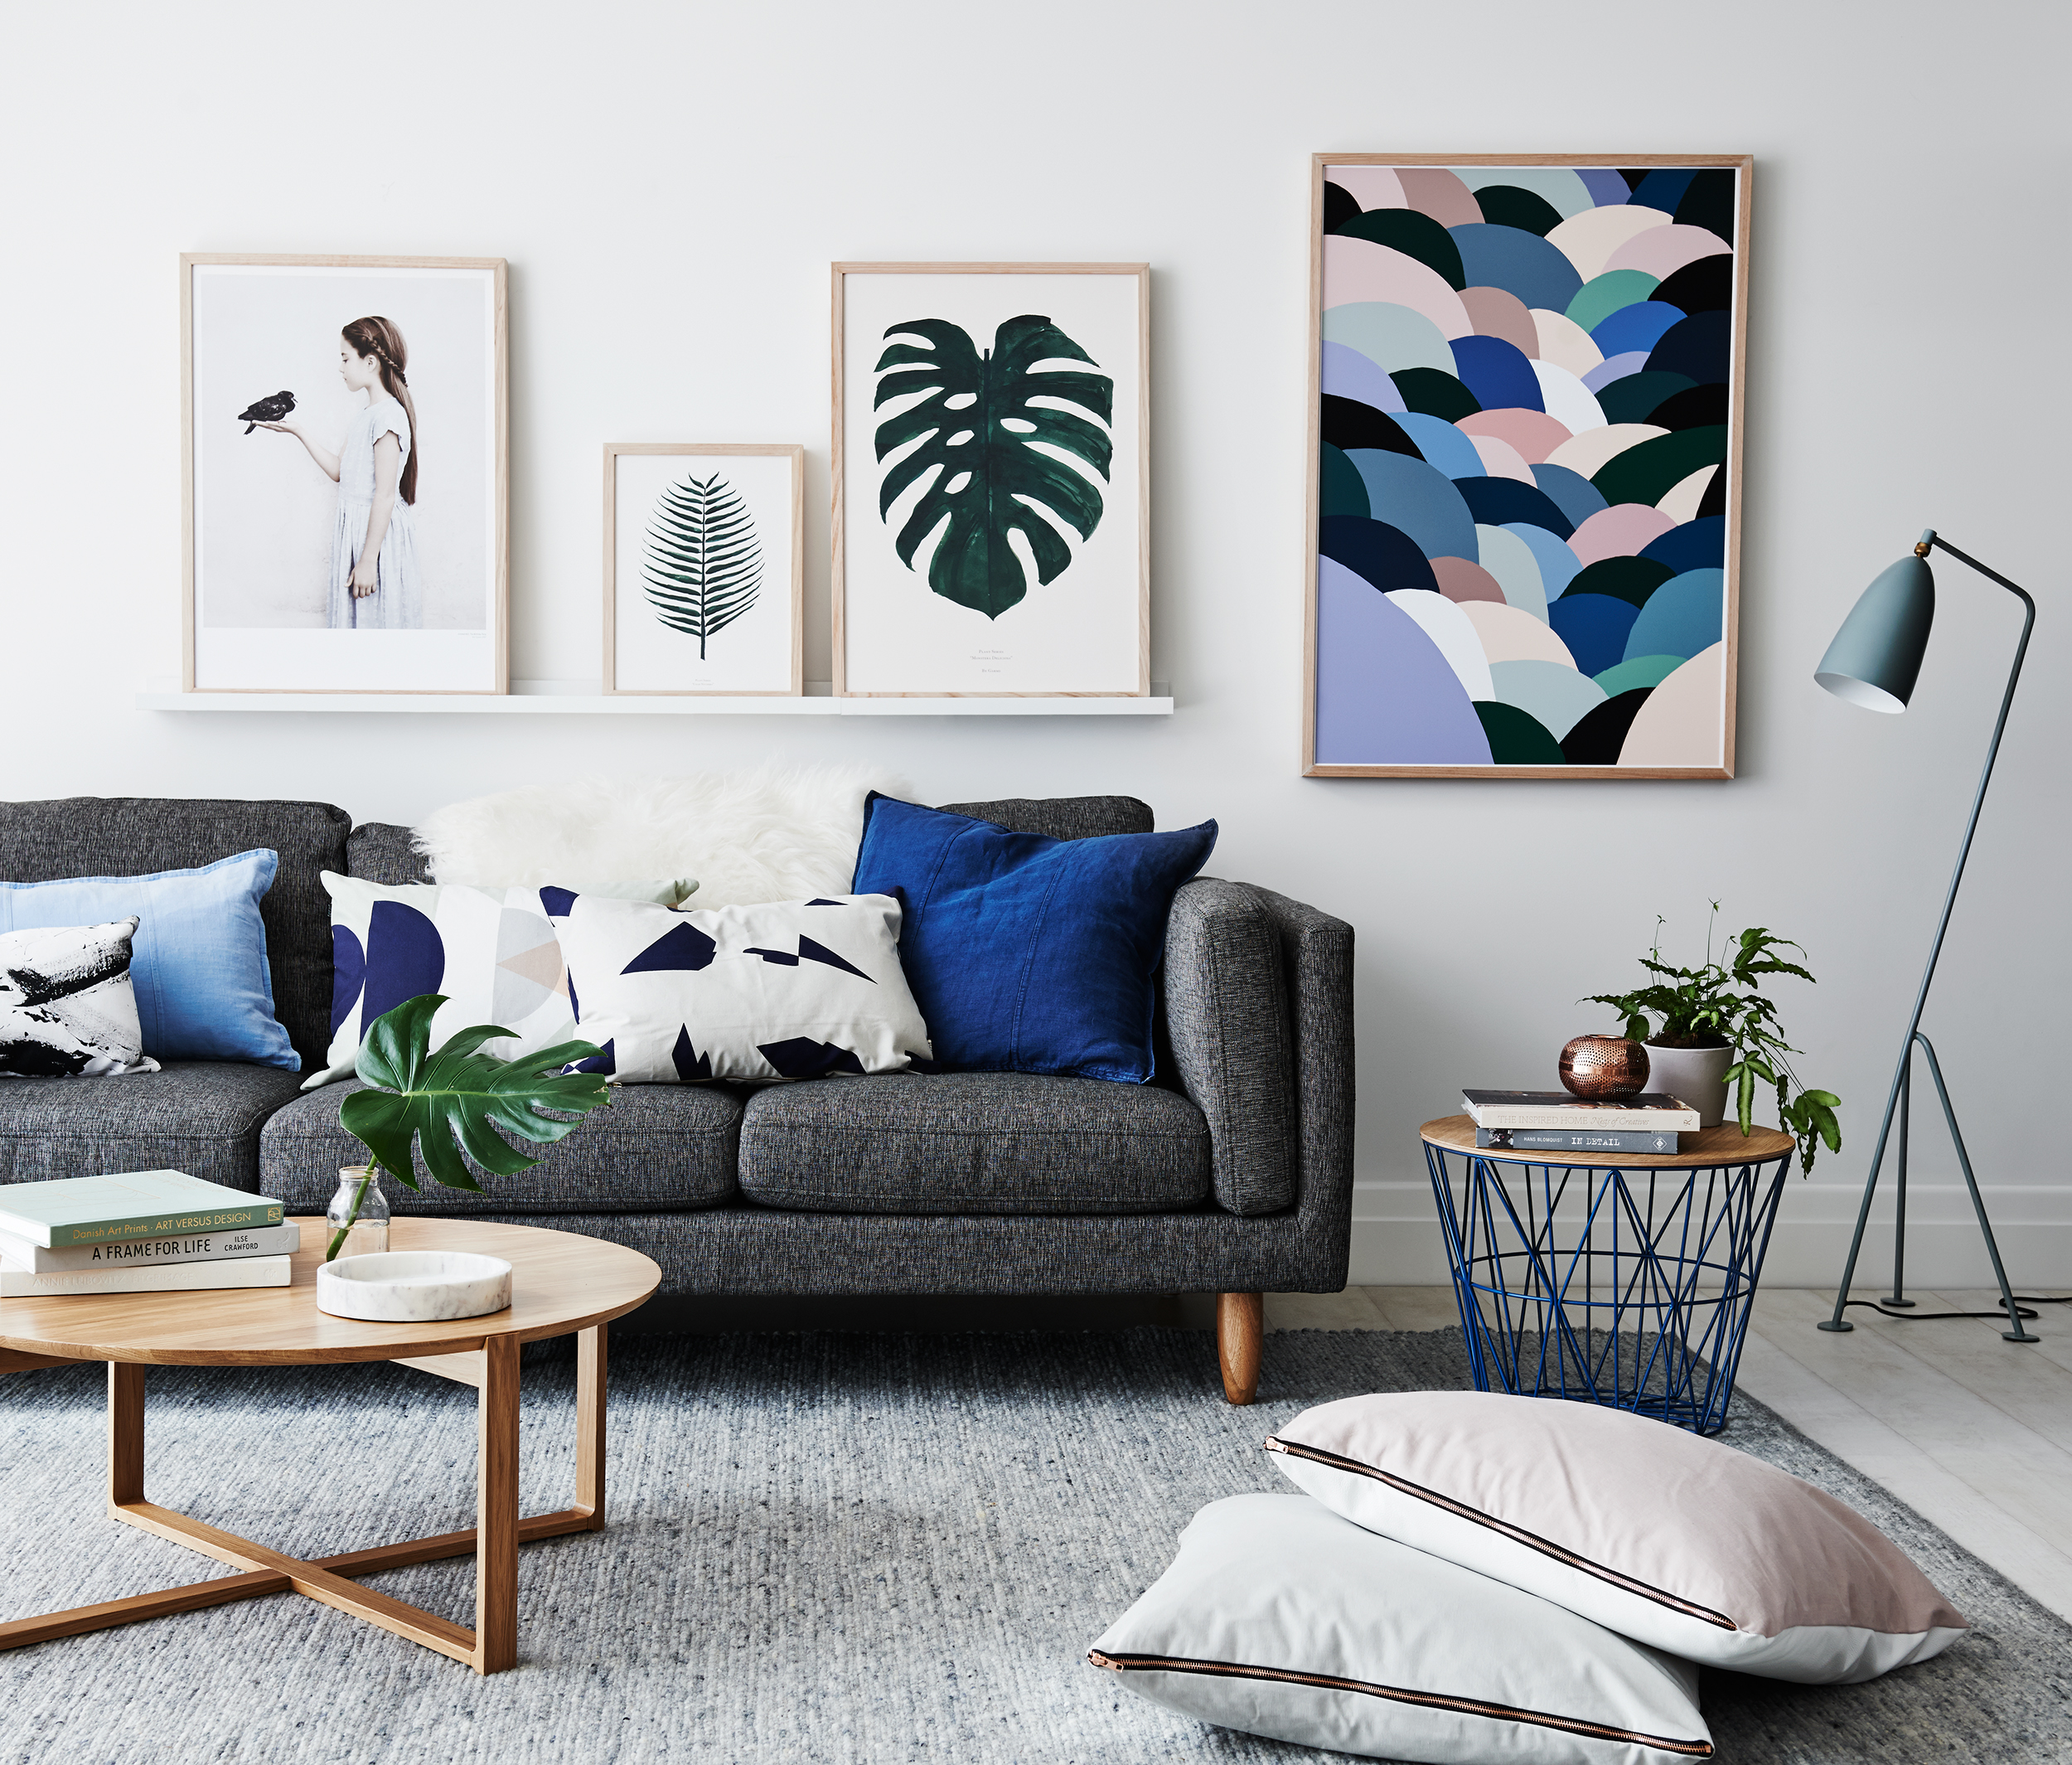 soggiorno con divano grigio e cuscini a fantasie blu, tappeto grigio, tavolino da caffè in legno chiaro e quadri a tema vario a parete